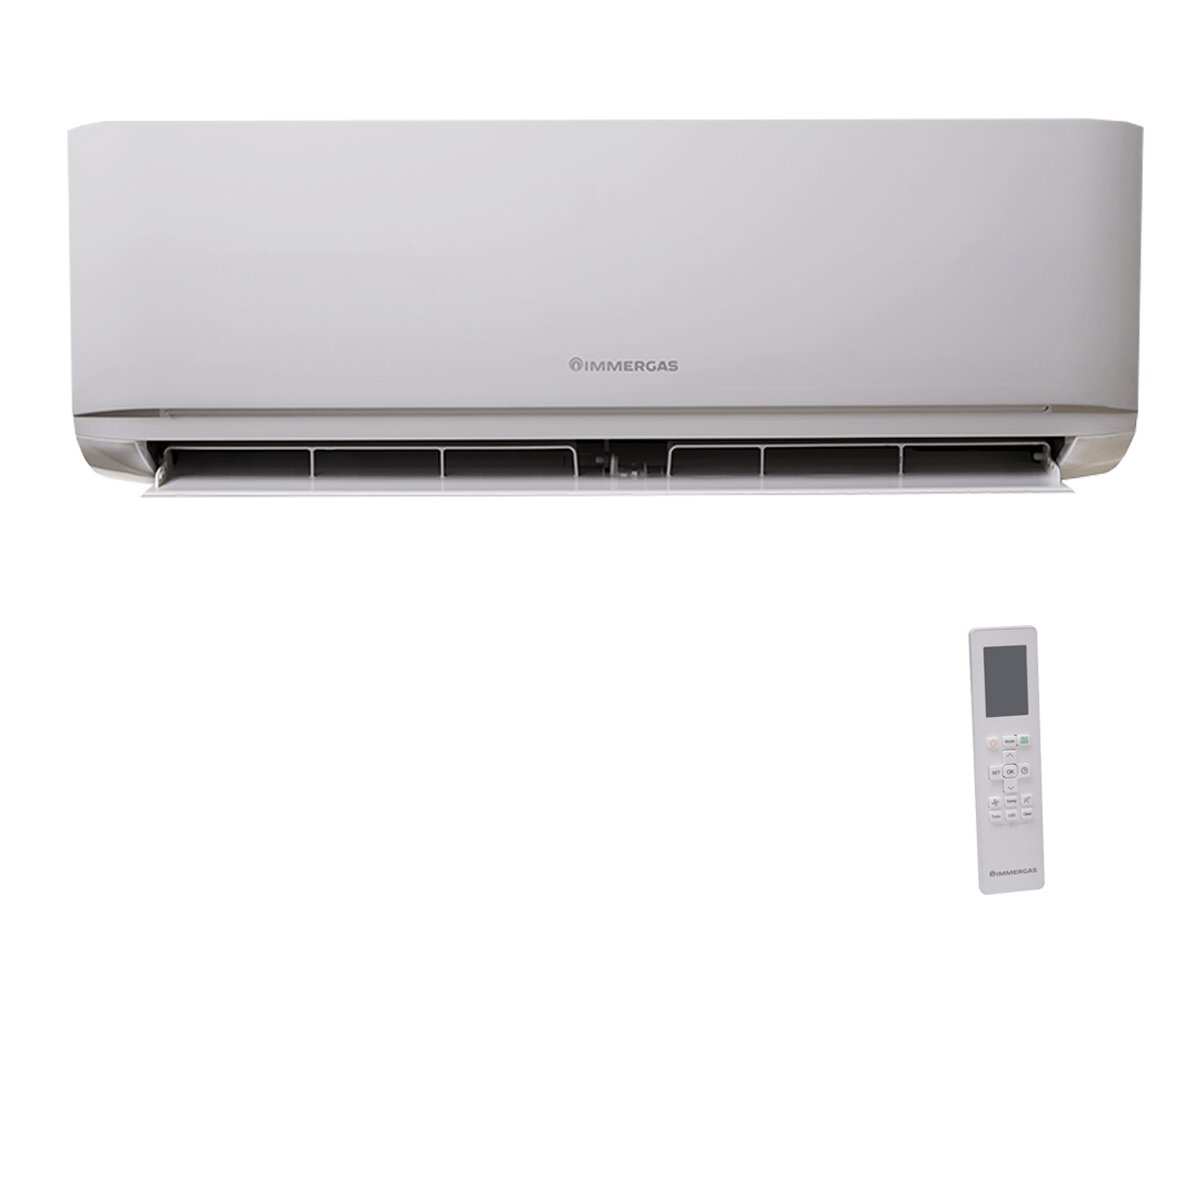 Immergas GOTHA 9000 BTU R32 Inverter-Klimaanlage A+++/A++ WiFi